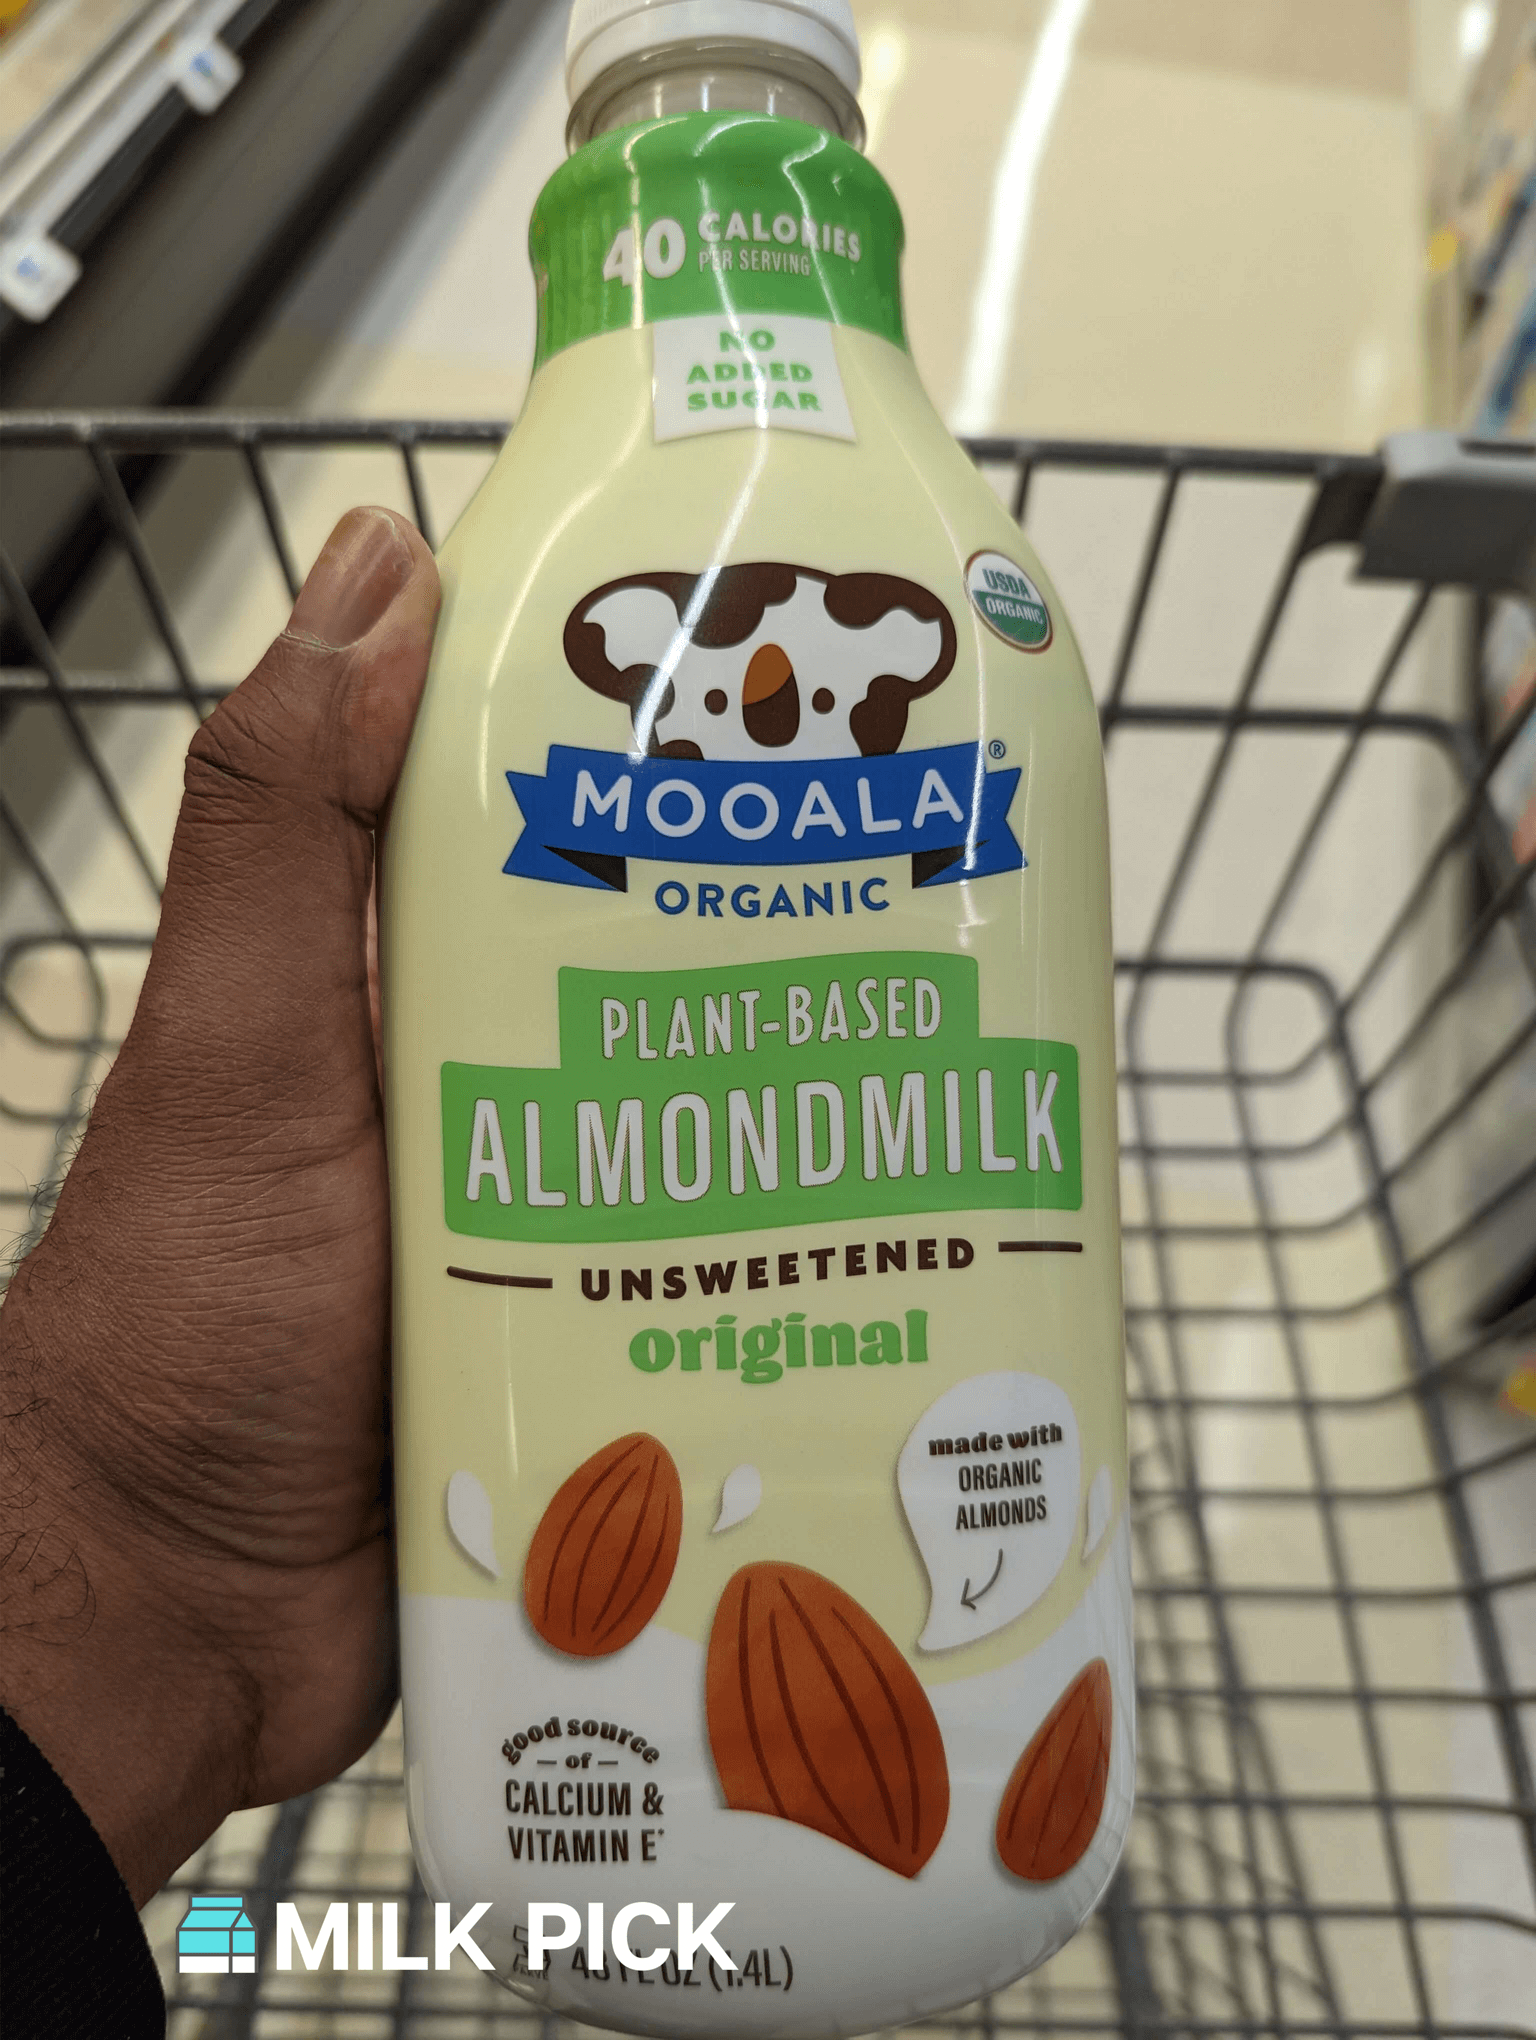 mooala unsweetened almond milk bottle